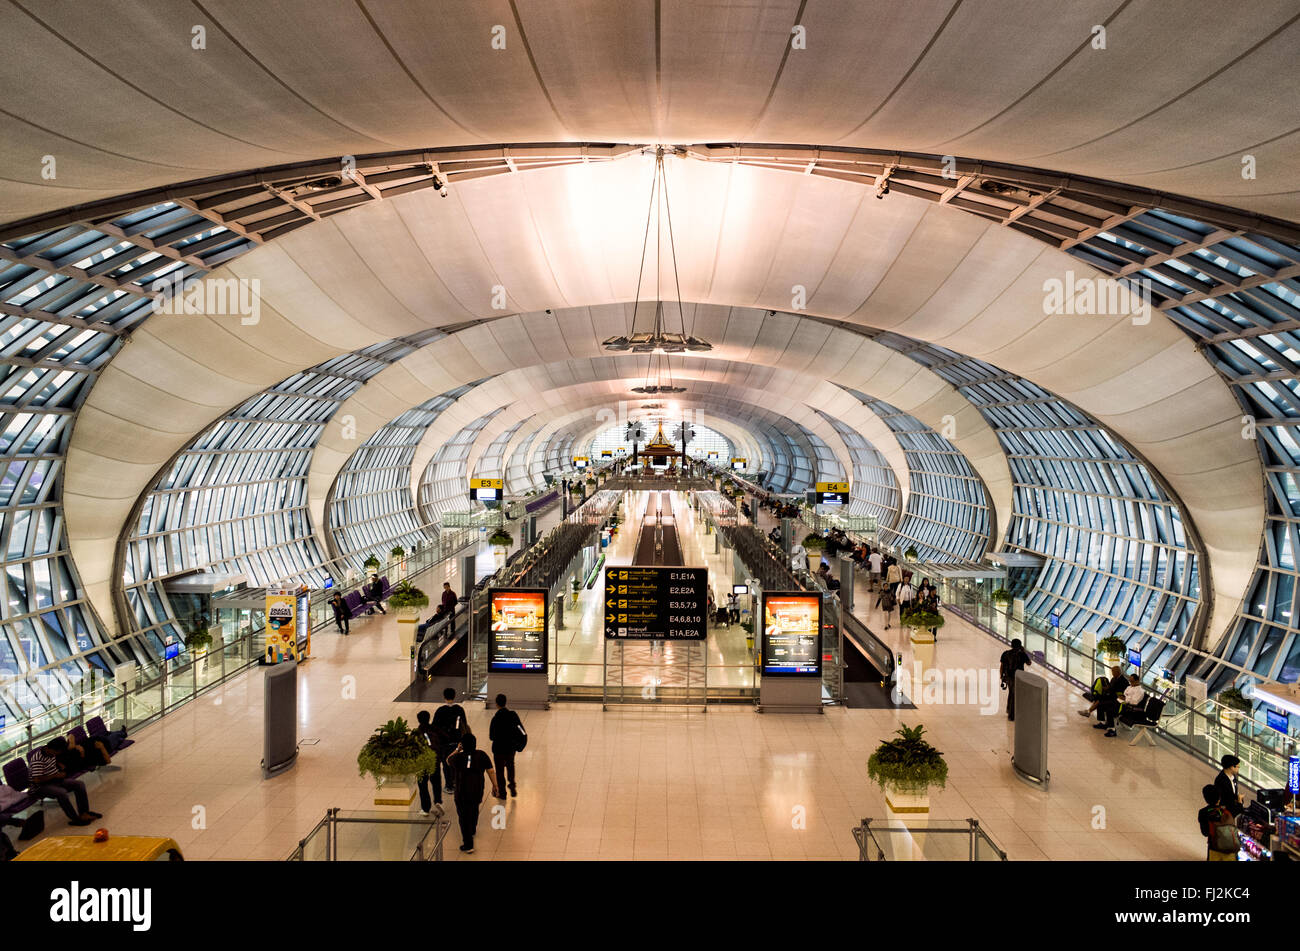 BANGKOK, THAÏLANDE - Un terminal de départ à l'aéroport de Suvarnabhumi Terminal, Bangkok, Thaïlande. Banque D'Images